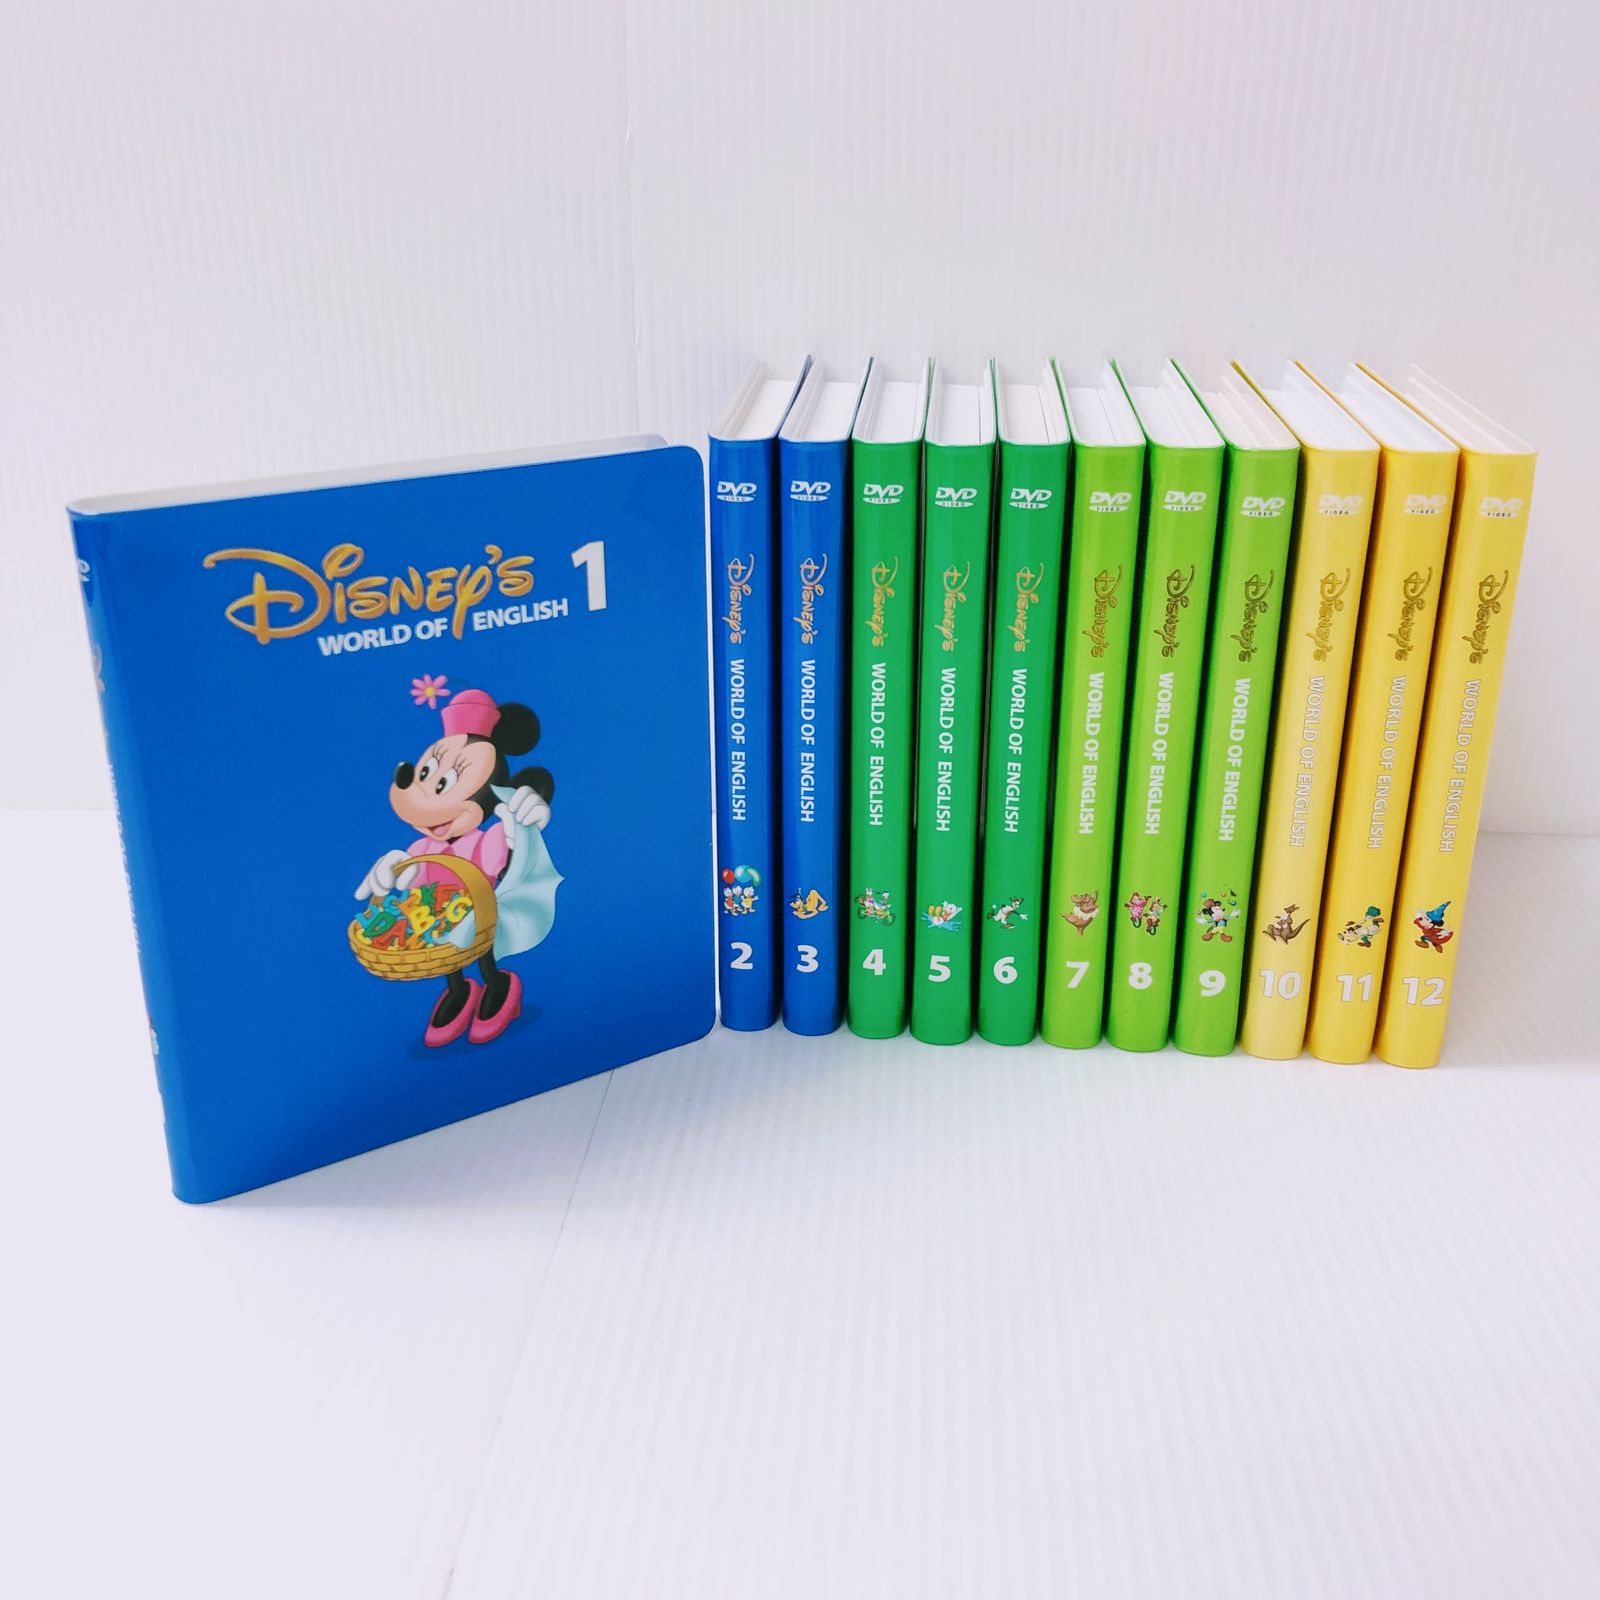 ディズニー英語システム ストレートプレイ DVD 旧子役 字幕有 2009年 d-352